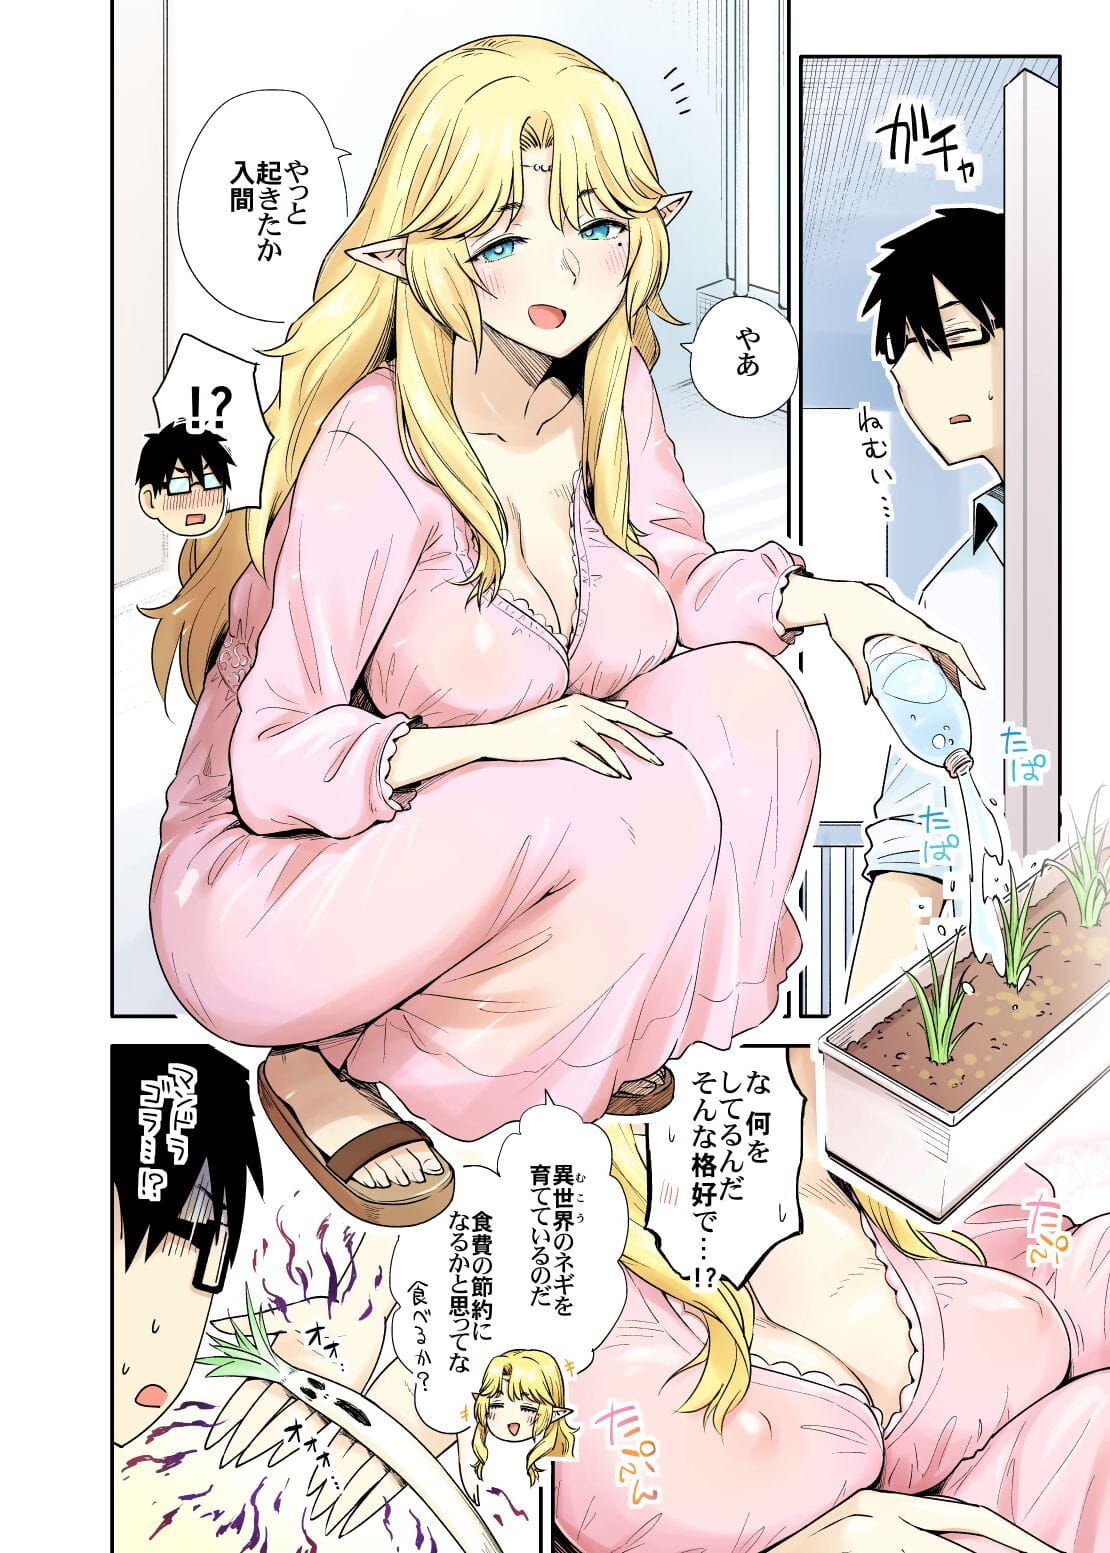 thần tiên manga page 1